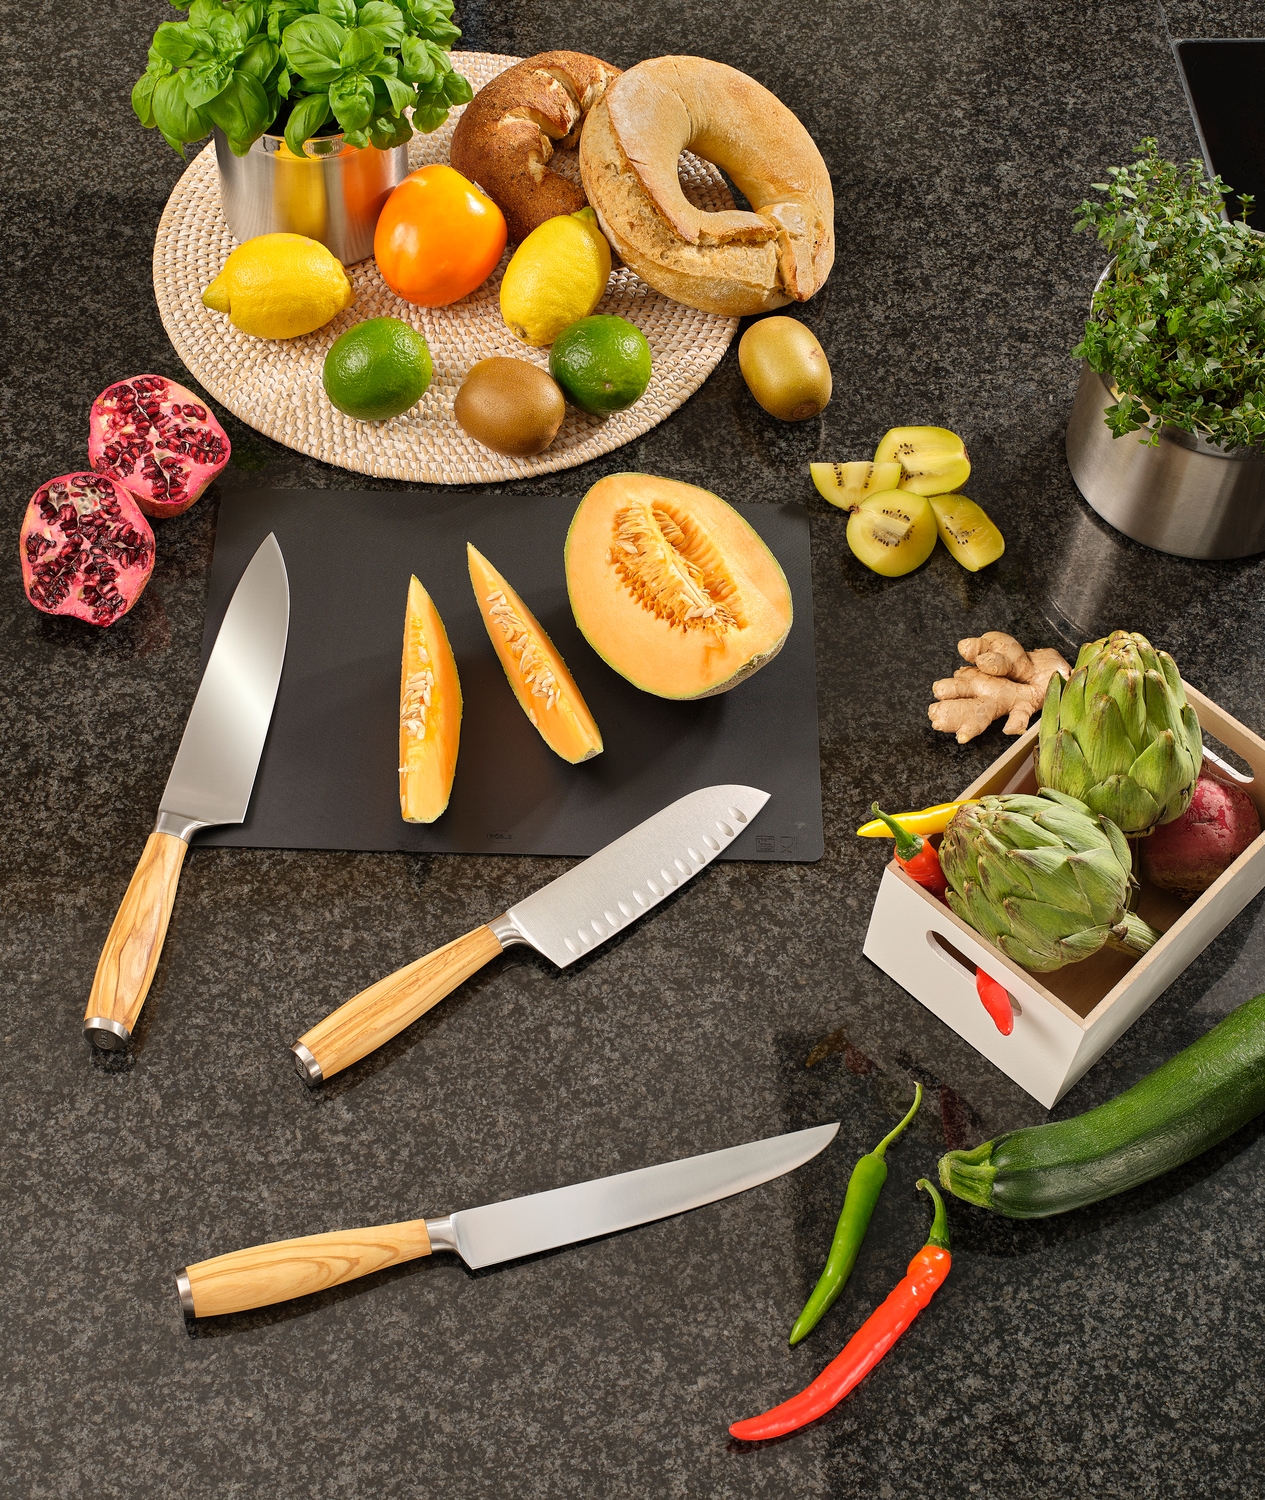 RÖSLE Fleischmesser »Artesano«, (1 tlg.), für Fleisch, Made in Solingen, Klingenspezialstahl, Olivenholz